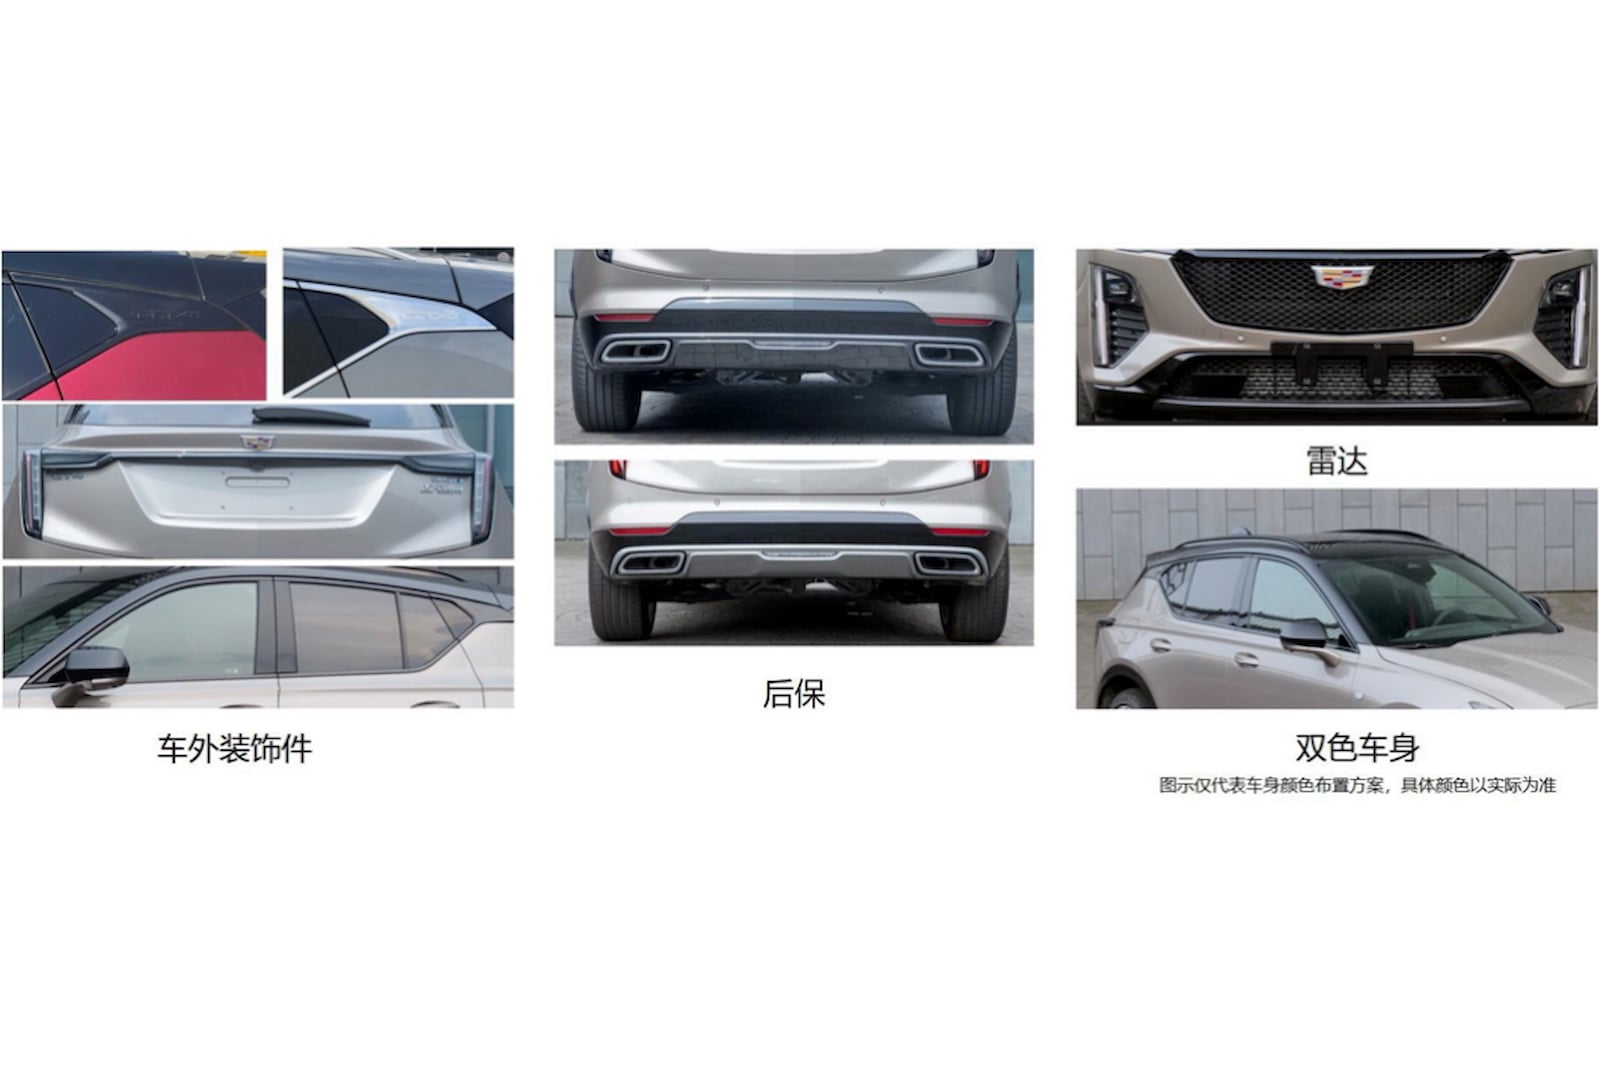 Как сообщает Car News China, будут предложены две модели. Переднеприводный 25T Luxury оснащен 1,5-литровым силовым агрегатом мощностью 201 лошадиная сила. Те, кто ищет больше мощности, выберут 28T Sport с 2,0-литровым двигателем. Этот вариант имеет м